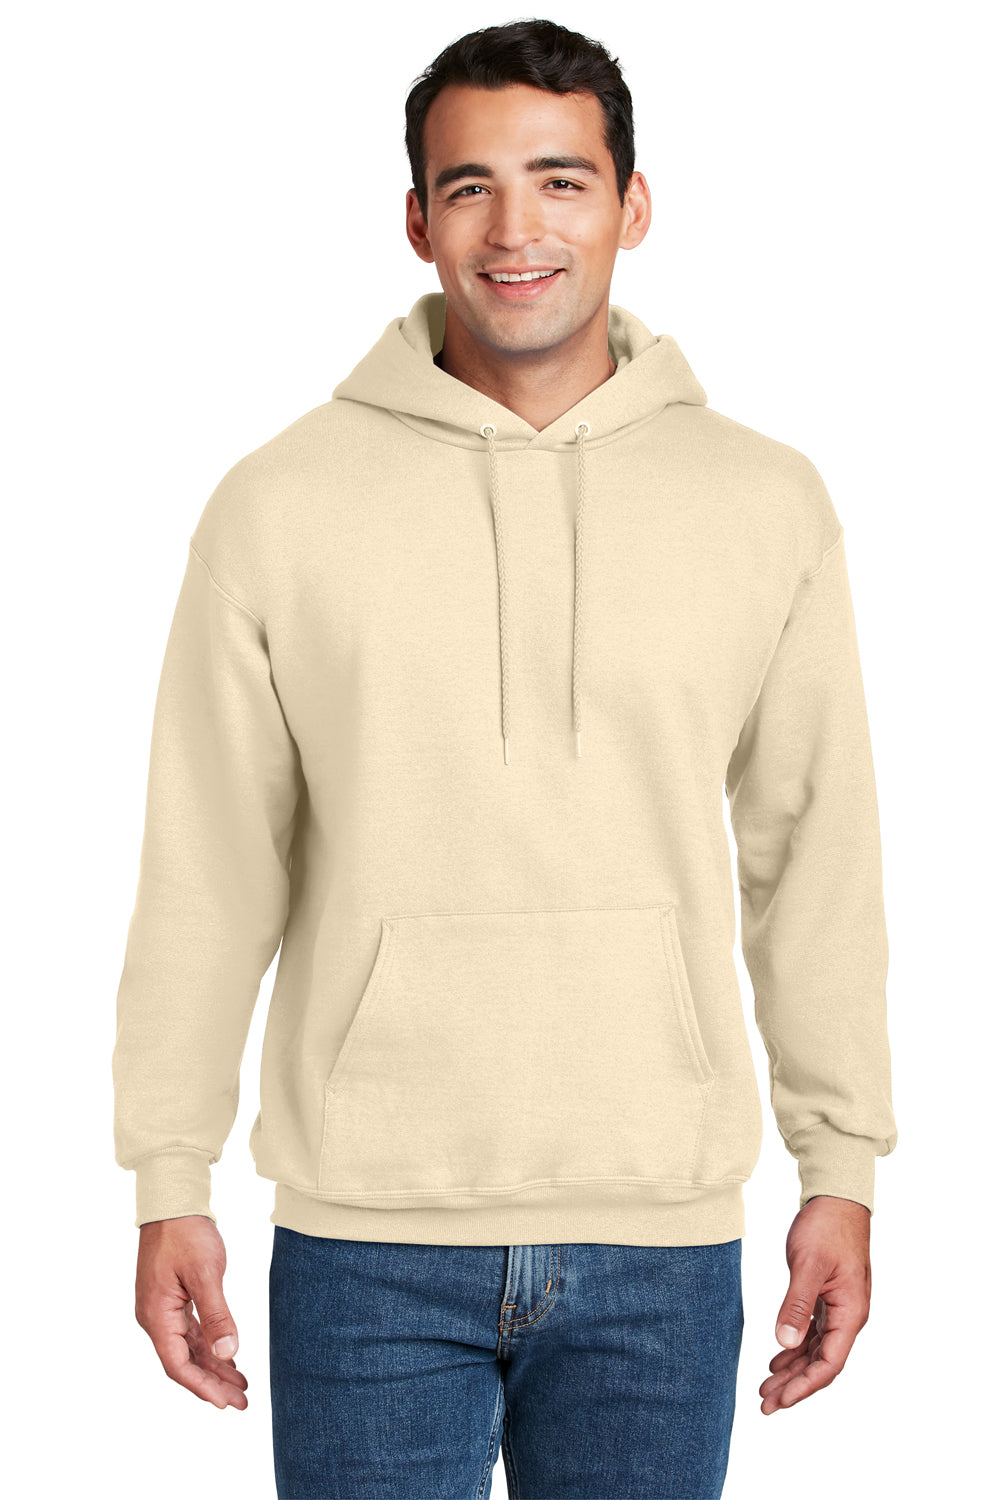 Hanes Mens Ultimate Cotton PrintPro XP Hooded Sweatshirt Hoodie Natural Front